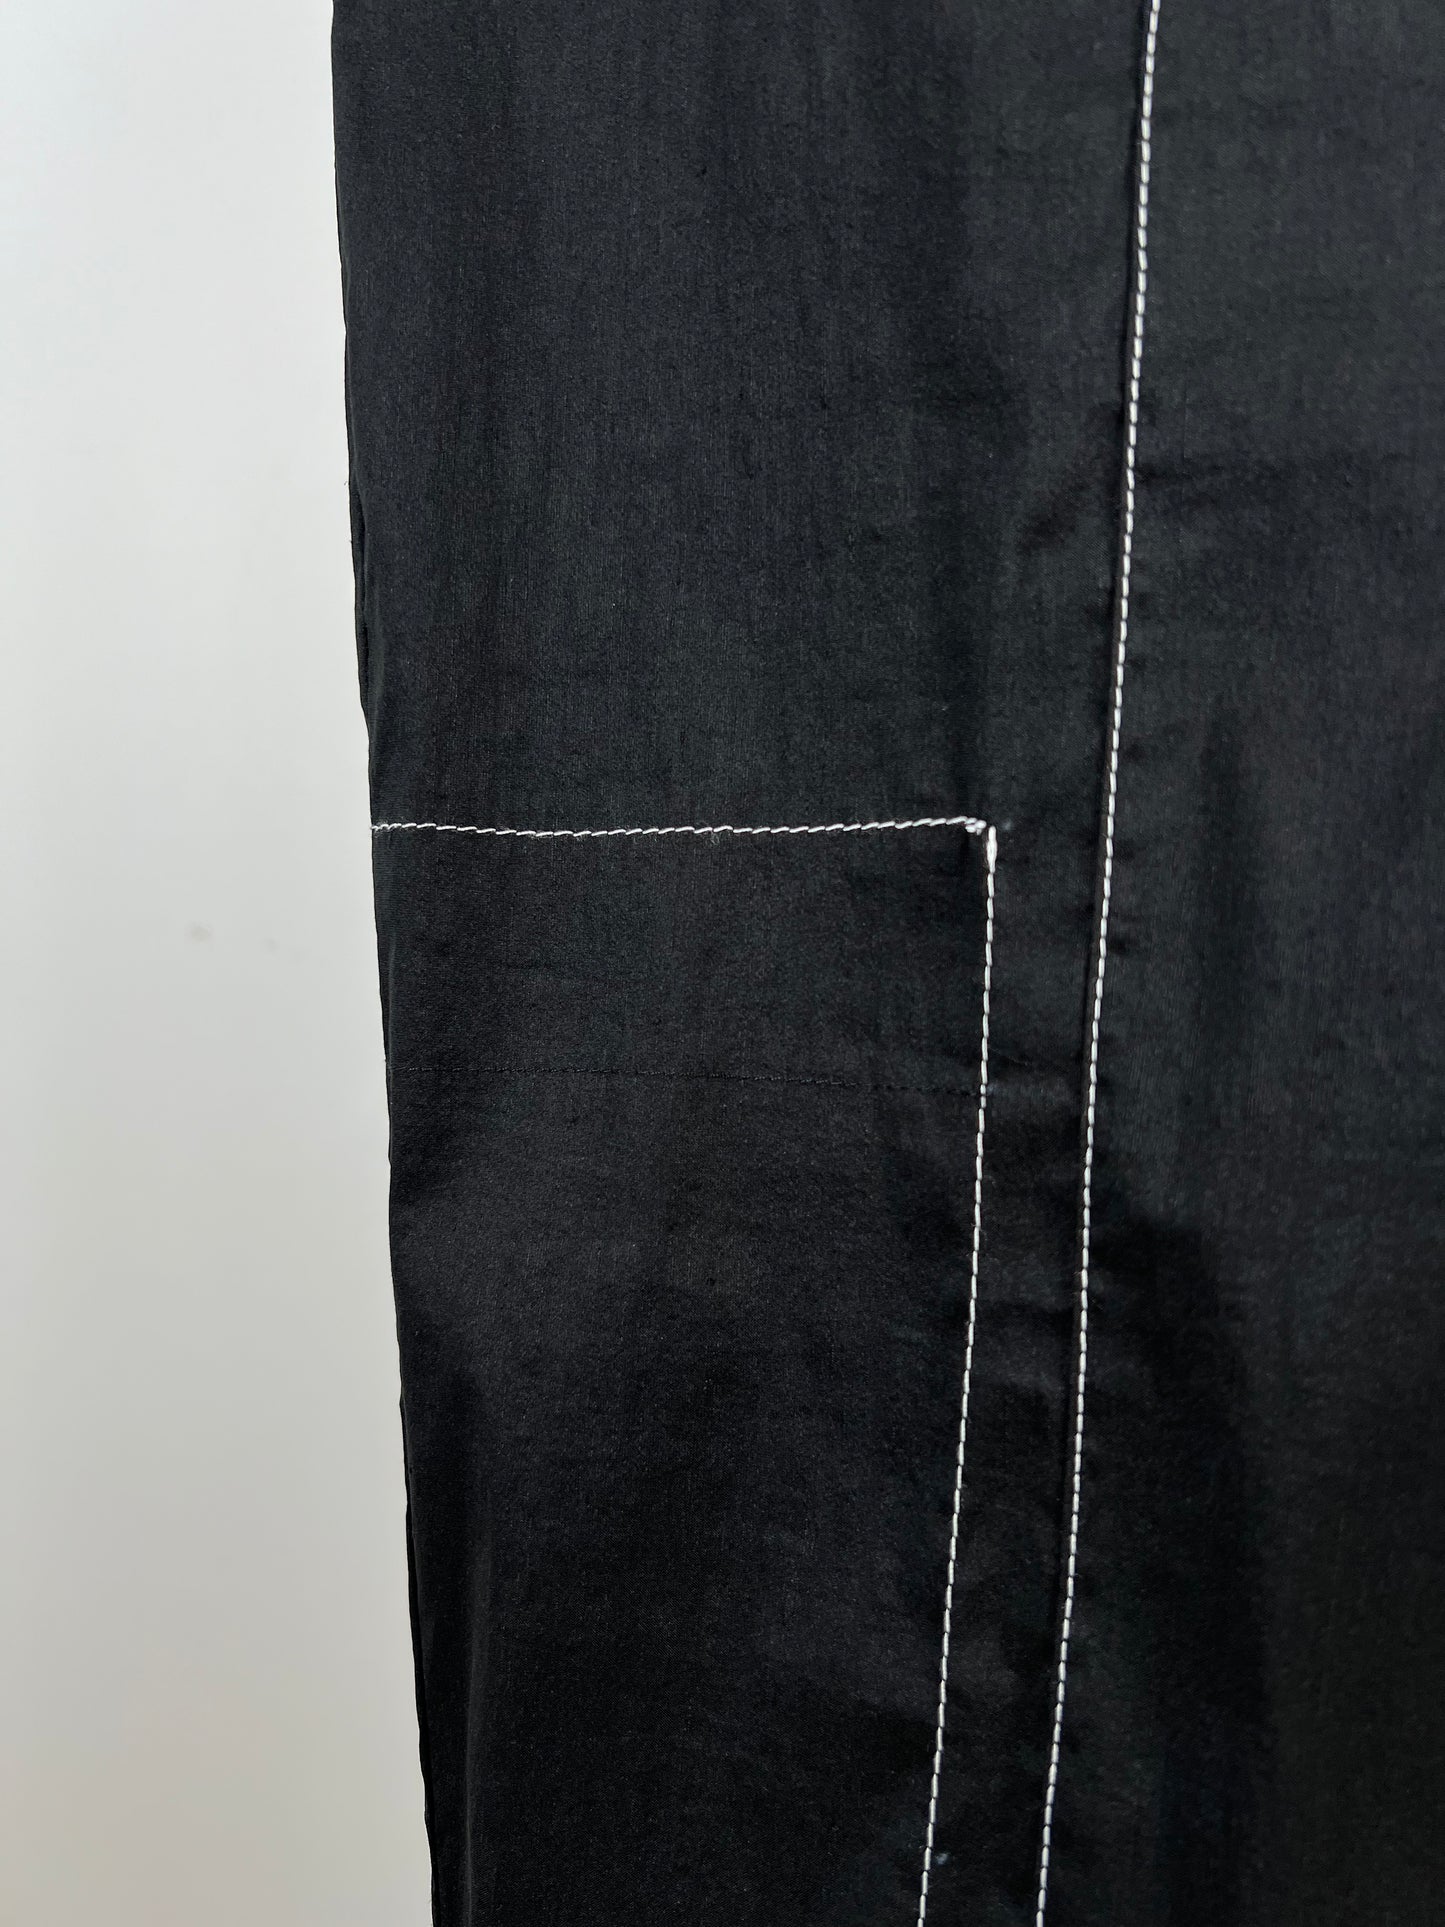 Pantalon noir façon portefeuille en lin techno (XS à XL)